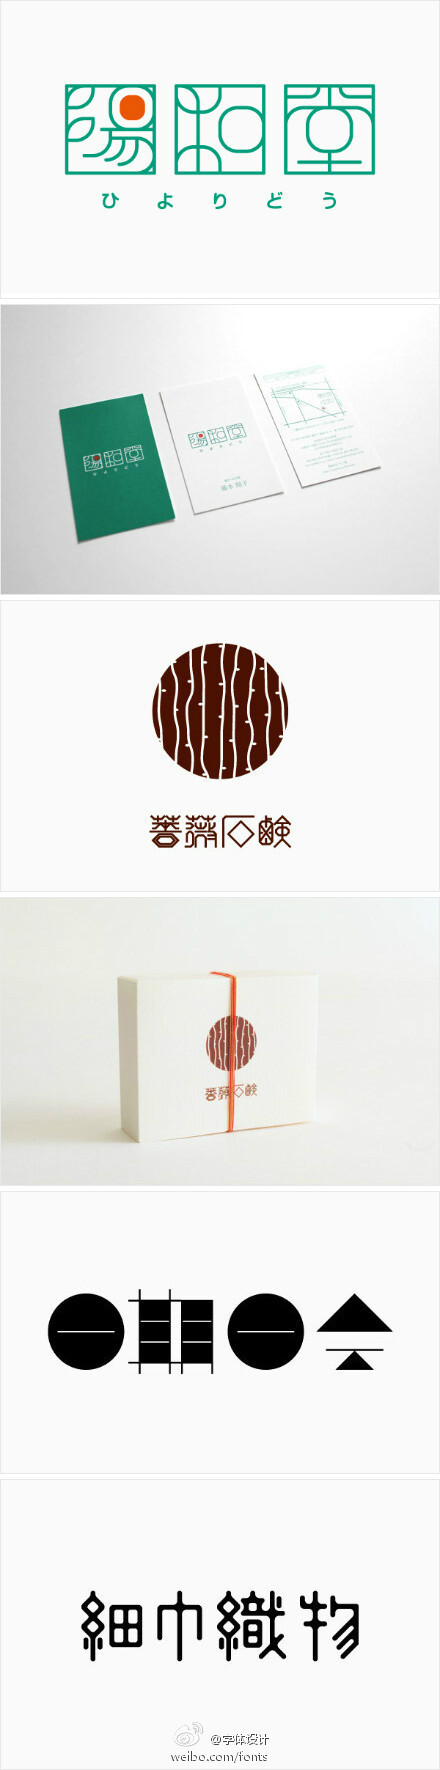 日本 kotohogi design 工作室logo 与字体设计，简约的小清新。